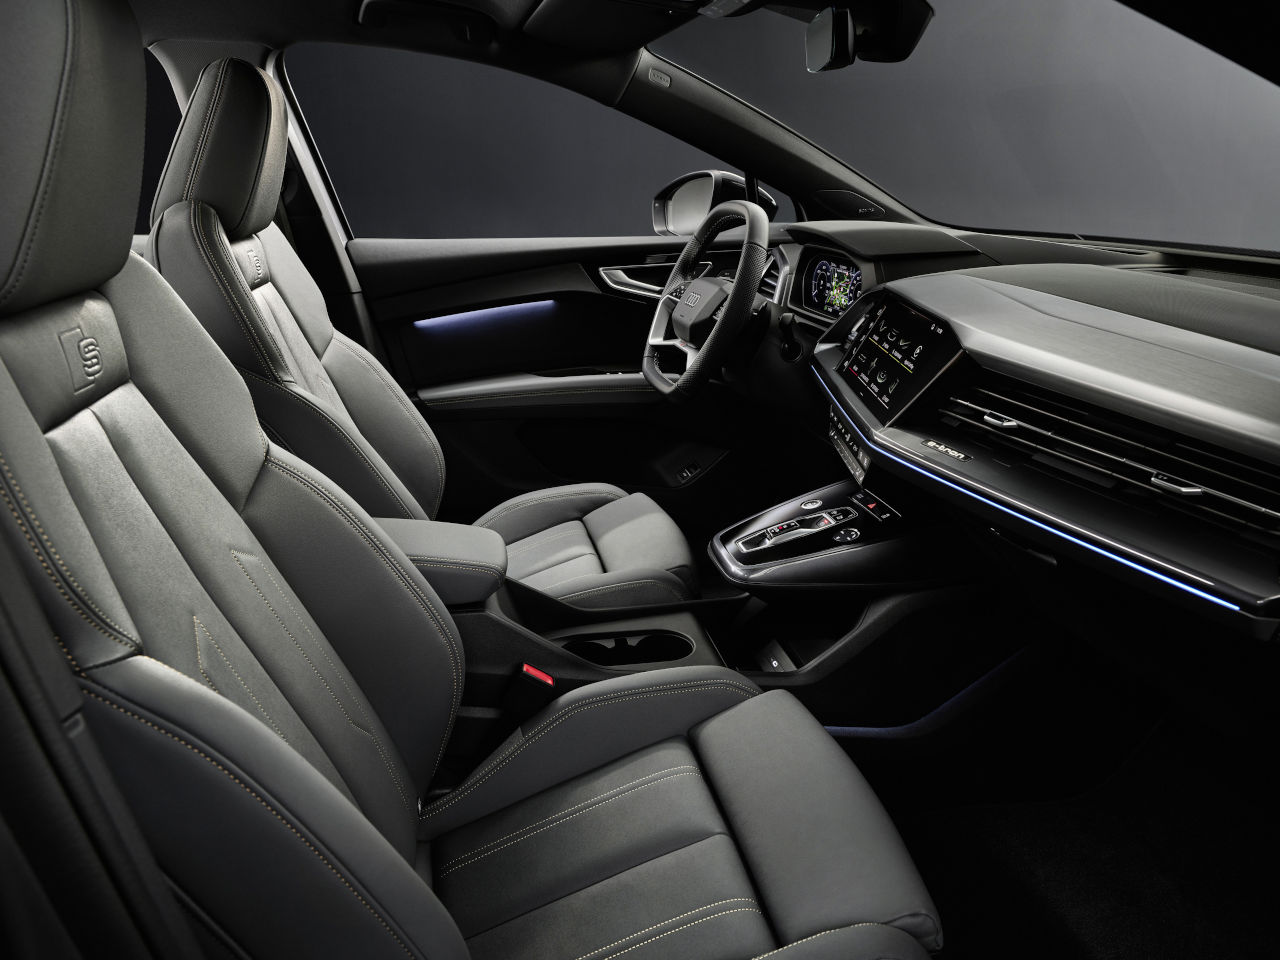 Ya está disponible el Q4 e-tron, el nuevo SUV compacto eléctrico de Audi